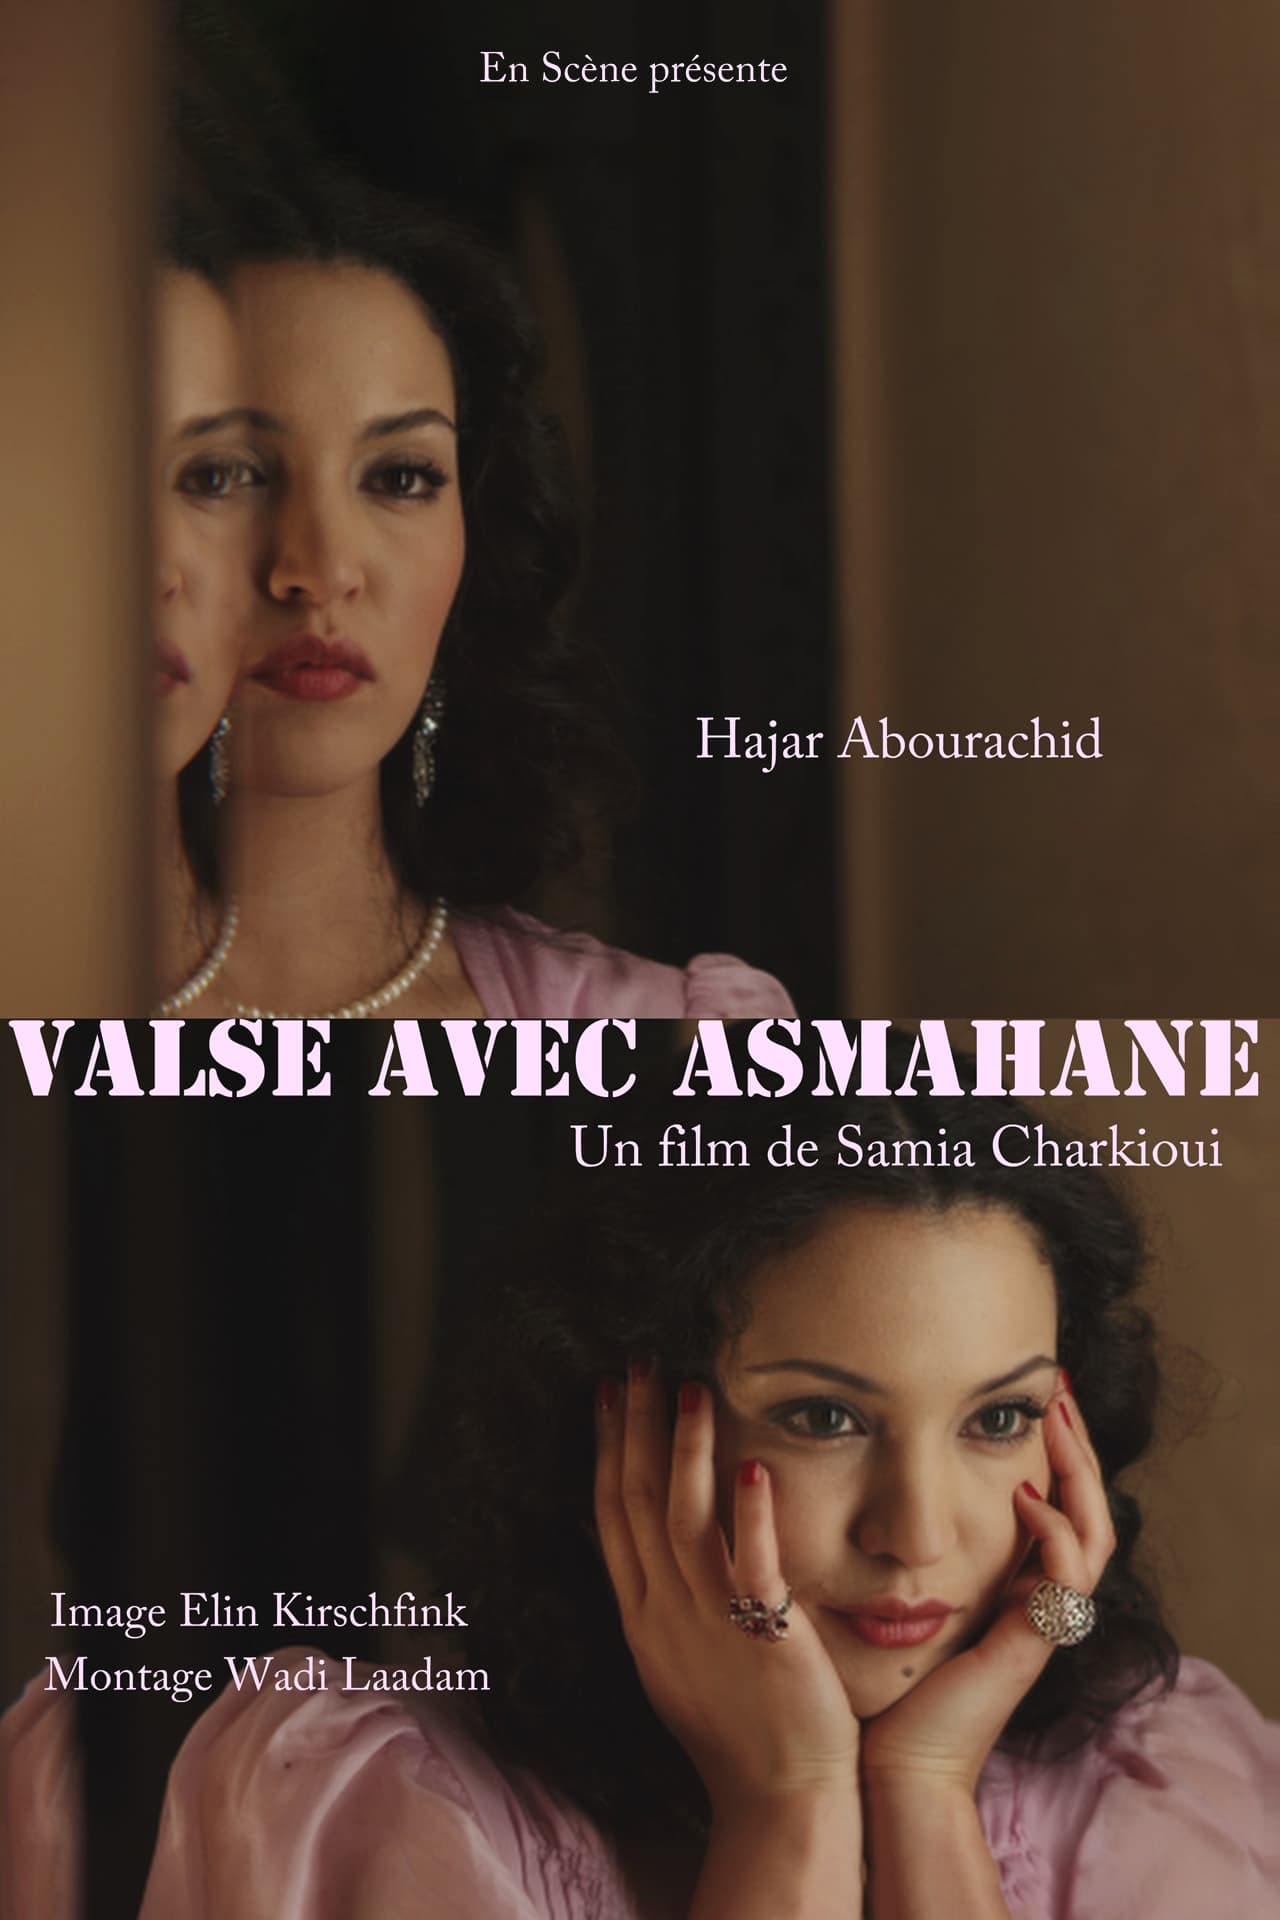 Valse with Asmahan